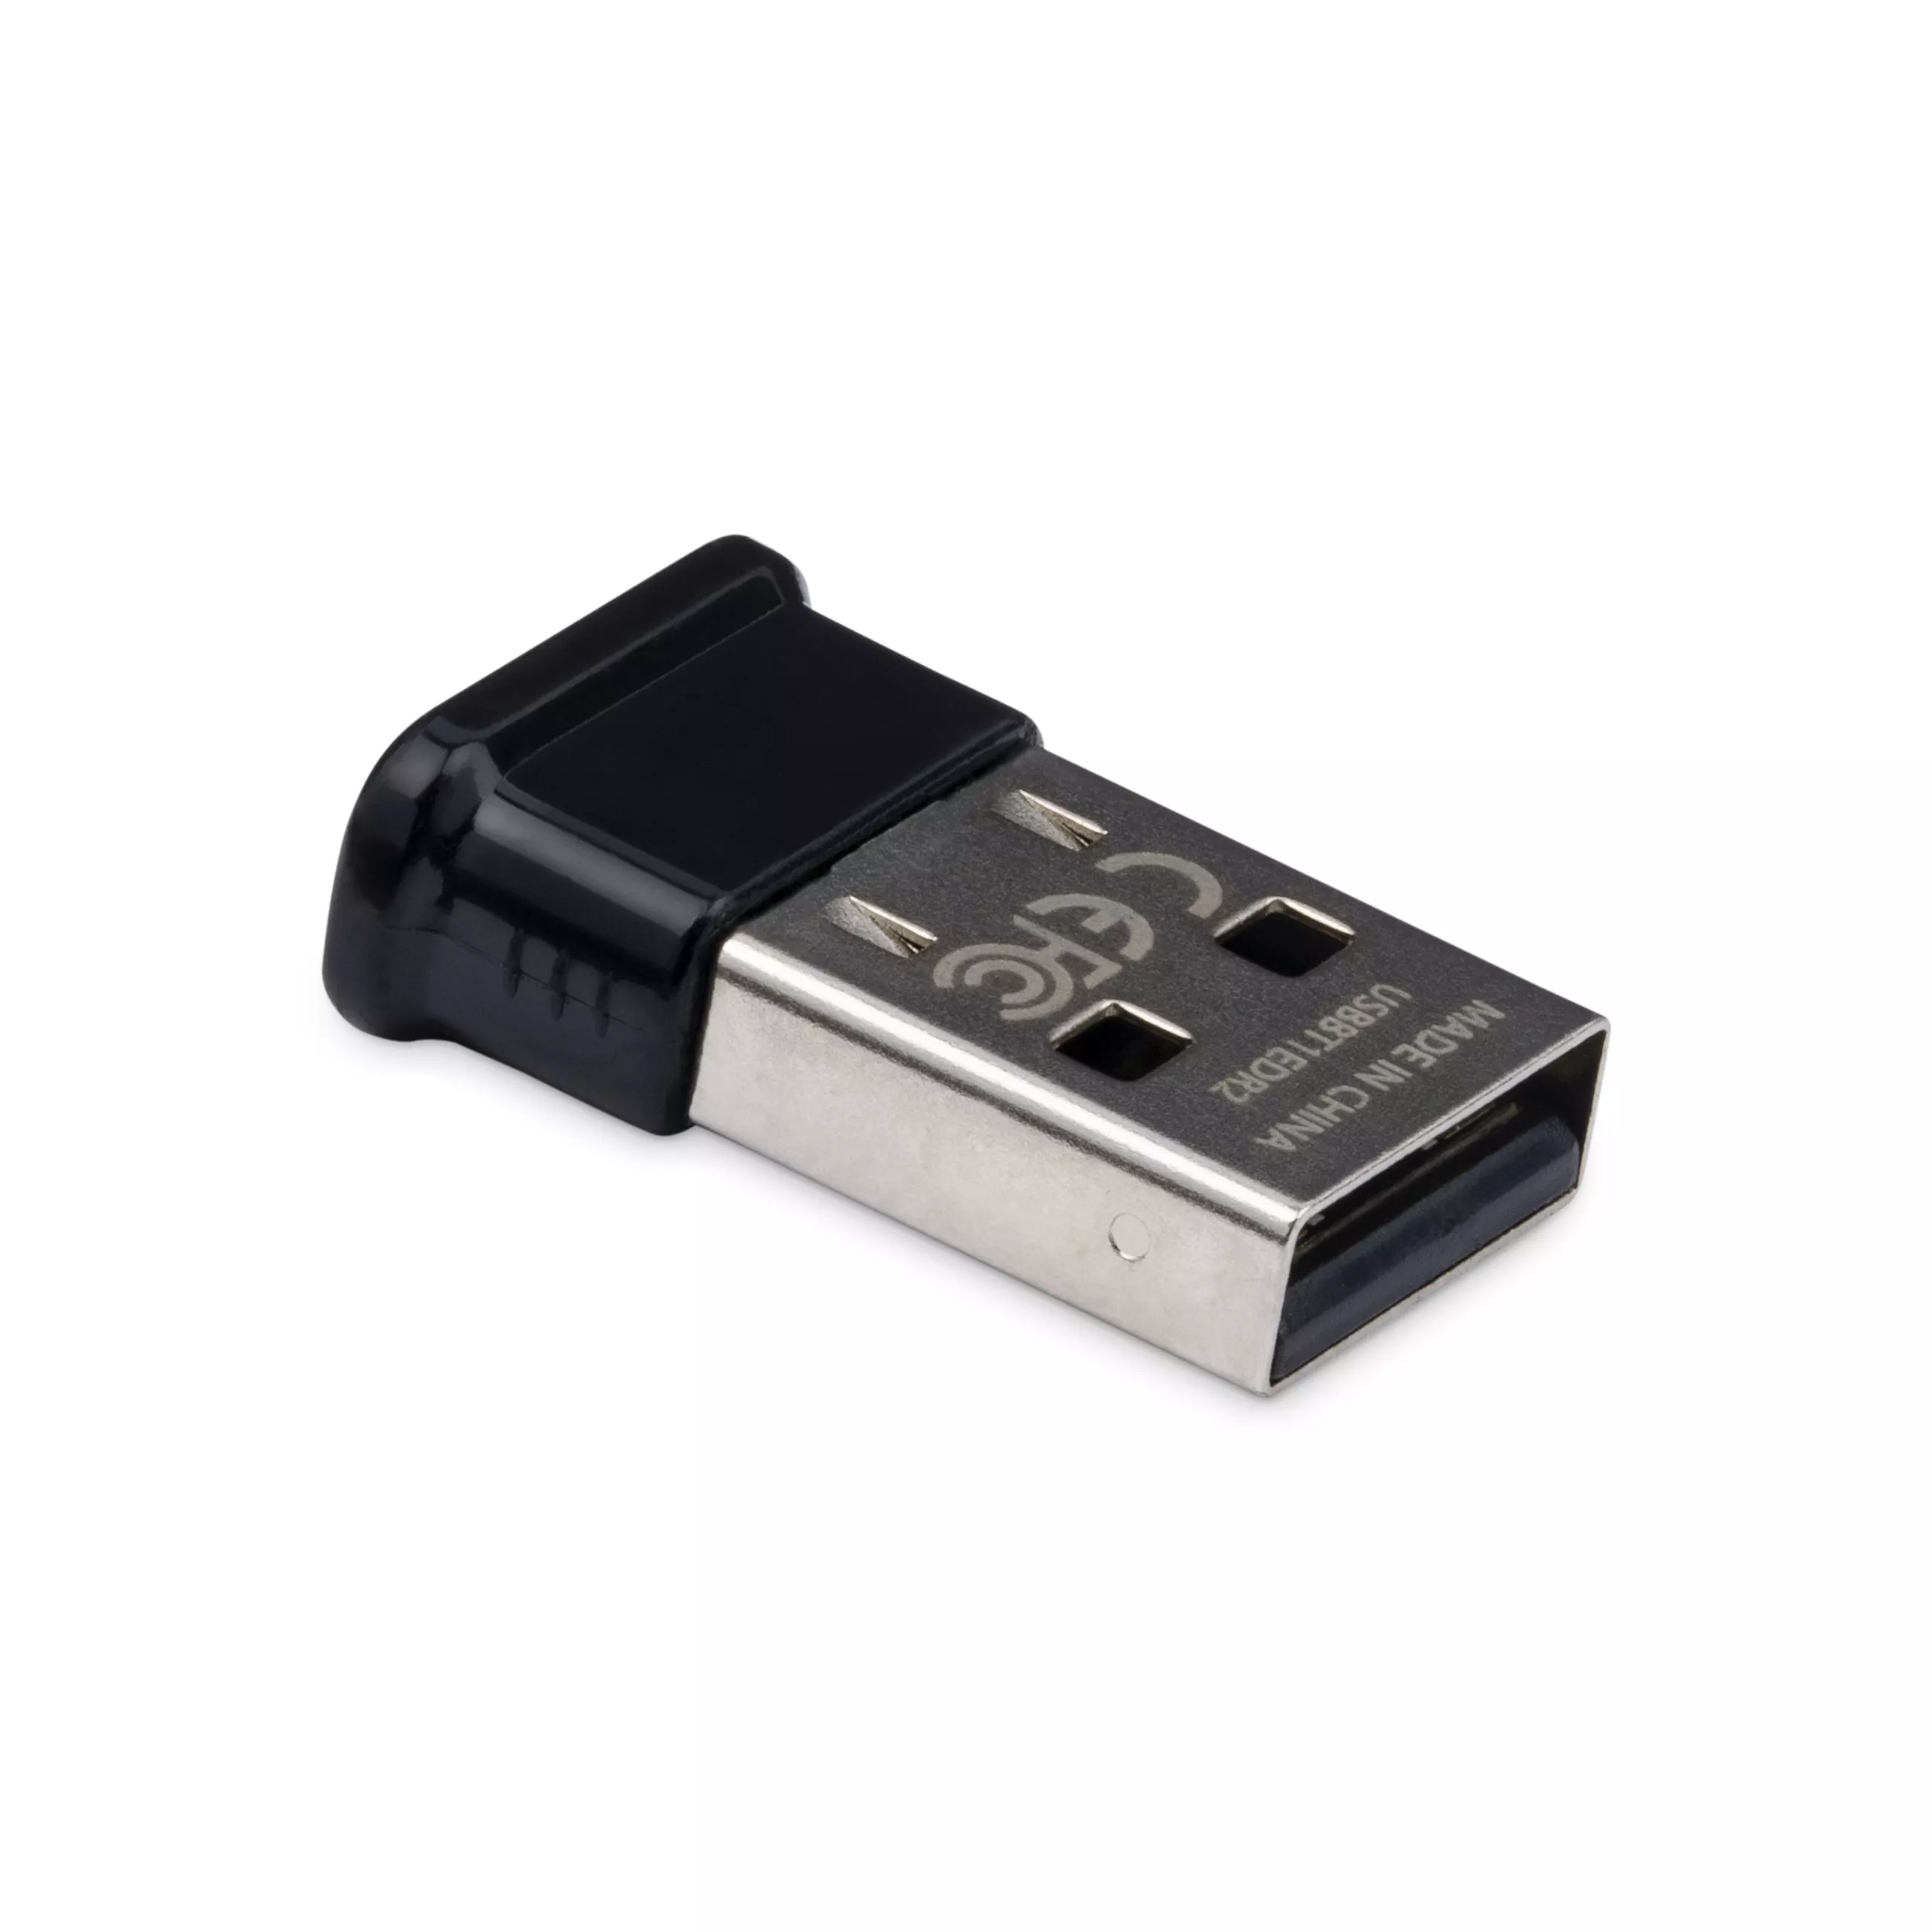 Vente StarTech.com Adaptateur Bluetooth 2.1 Mini USB - Adaptateur StarTech.com au meilleur prix - visuel 2